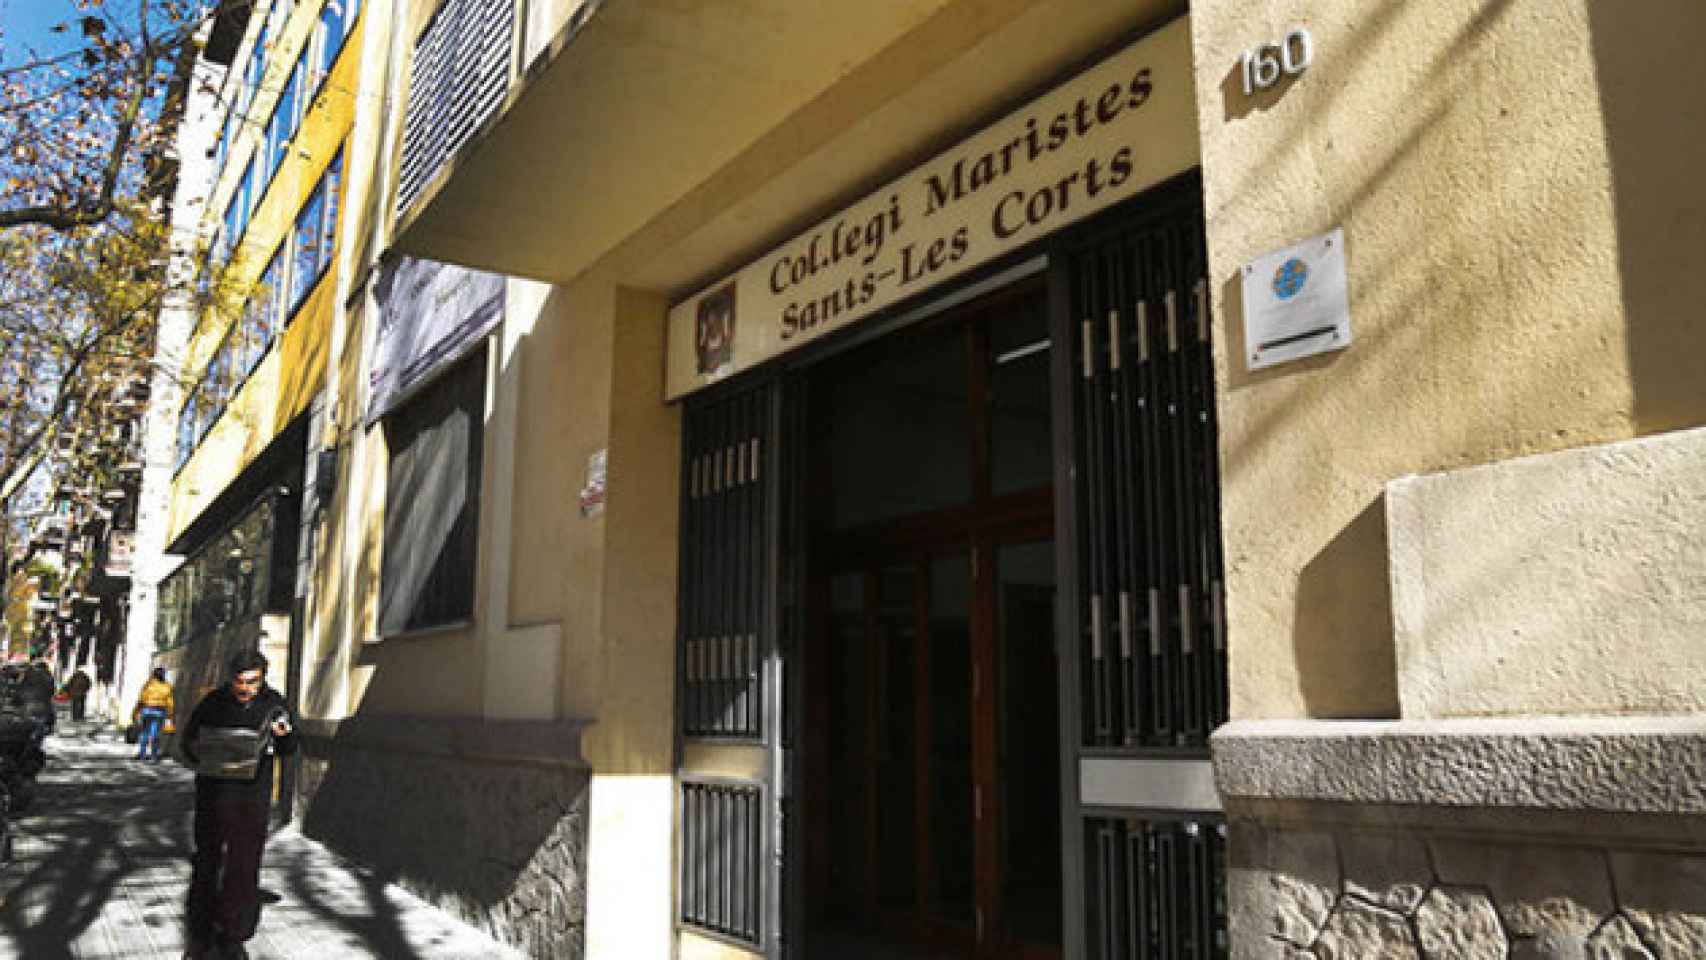 Imagen de archivo de la entrada del colegio de los Maristas de Sants- Les Corts en Barcelona / EFE